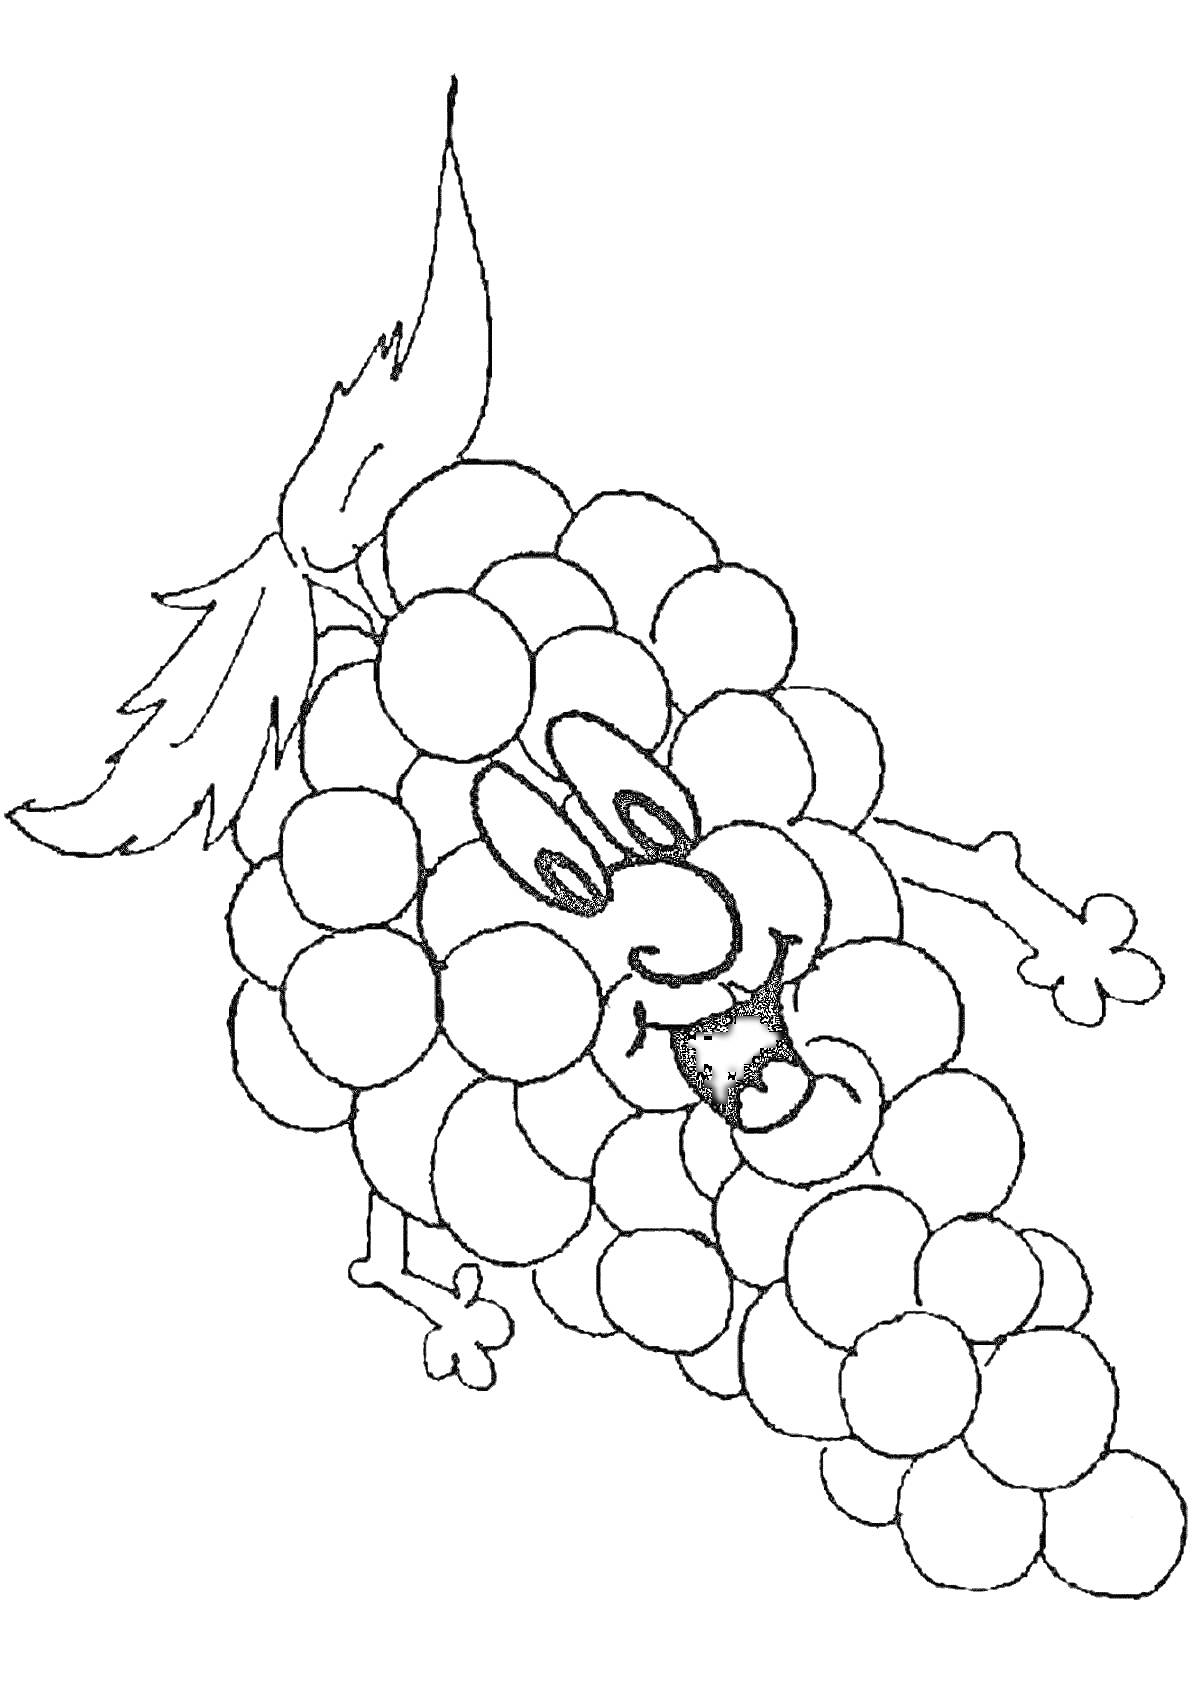 Раскраска Виноградная гроздь с лицом, руками и листьями